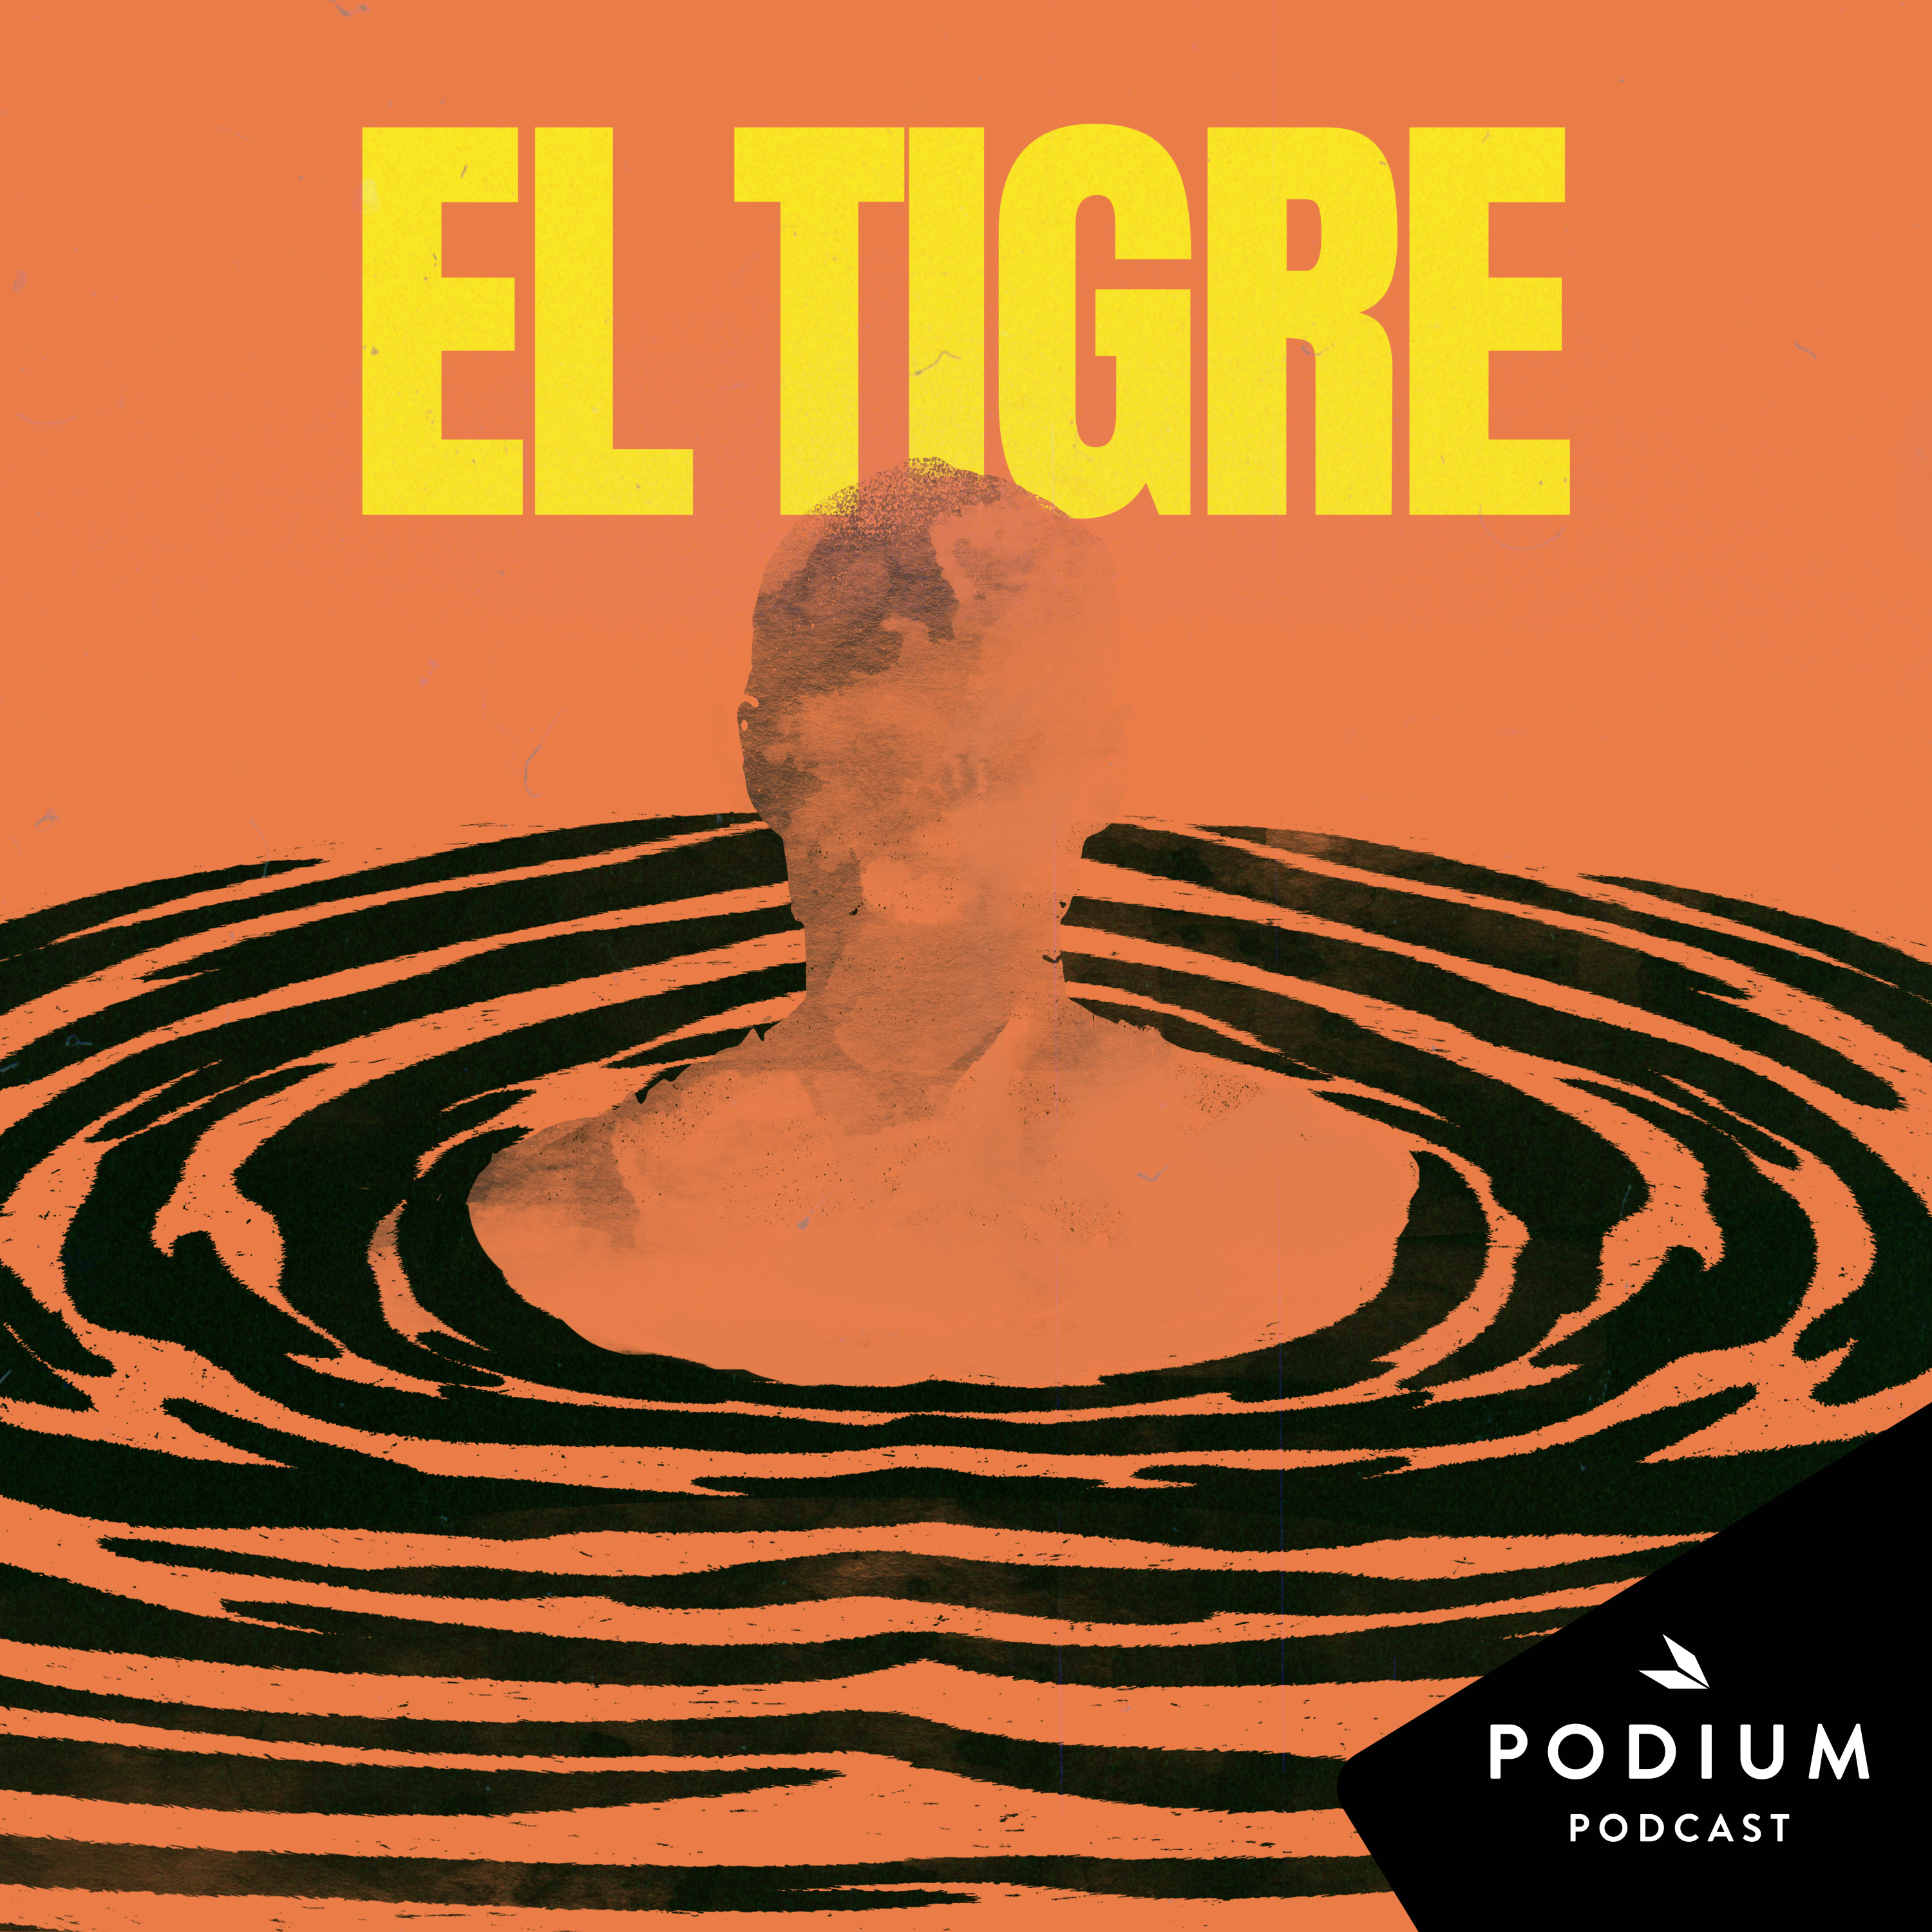 Imagen de El tigre - la nueva ficción de Podium Podcast y Estela Films